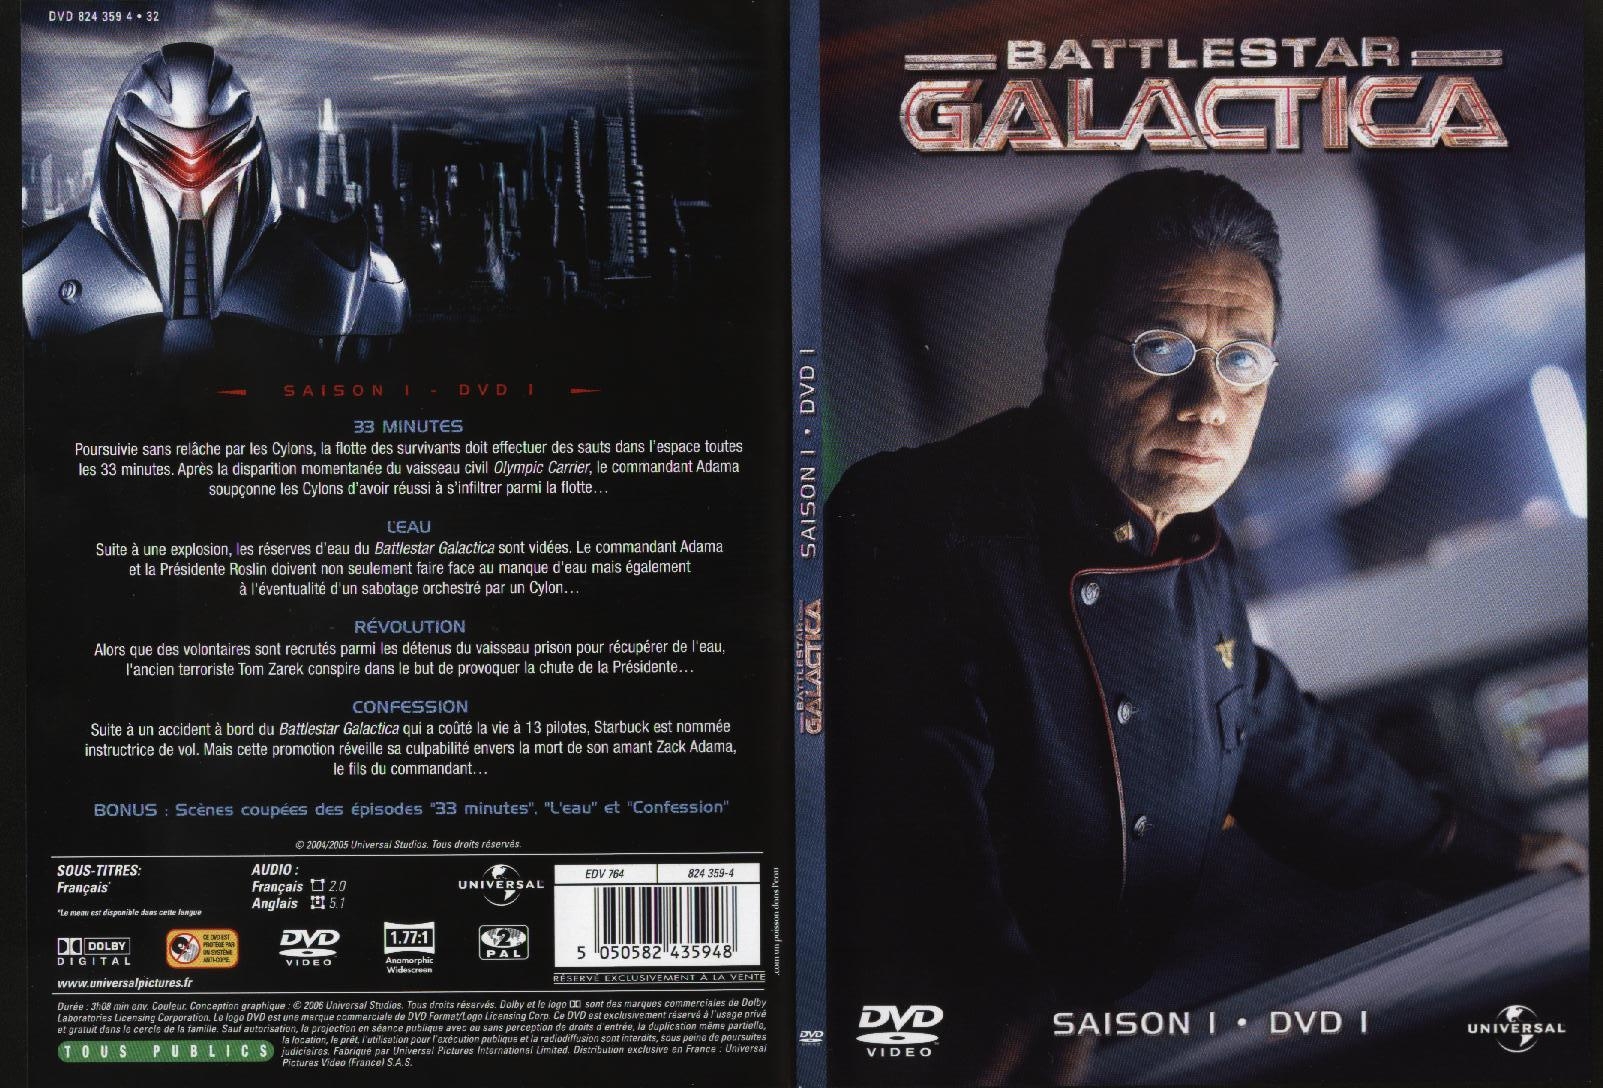 Jaquette DVD Battlestar Galactica saison 1 dvd 1